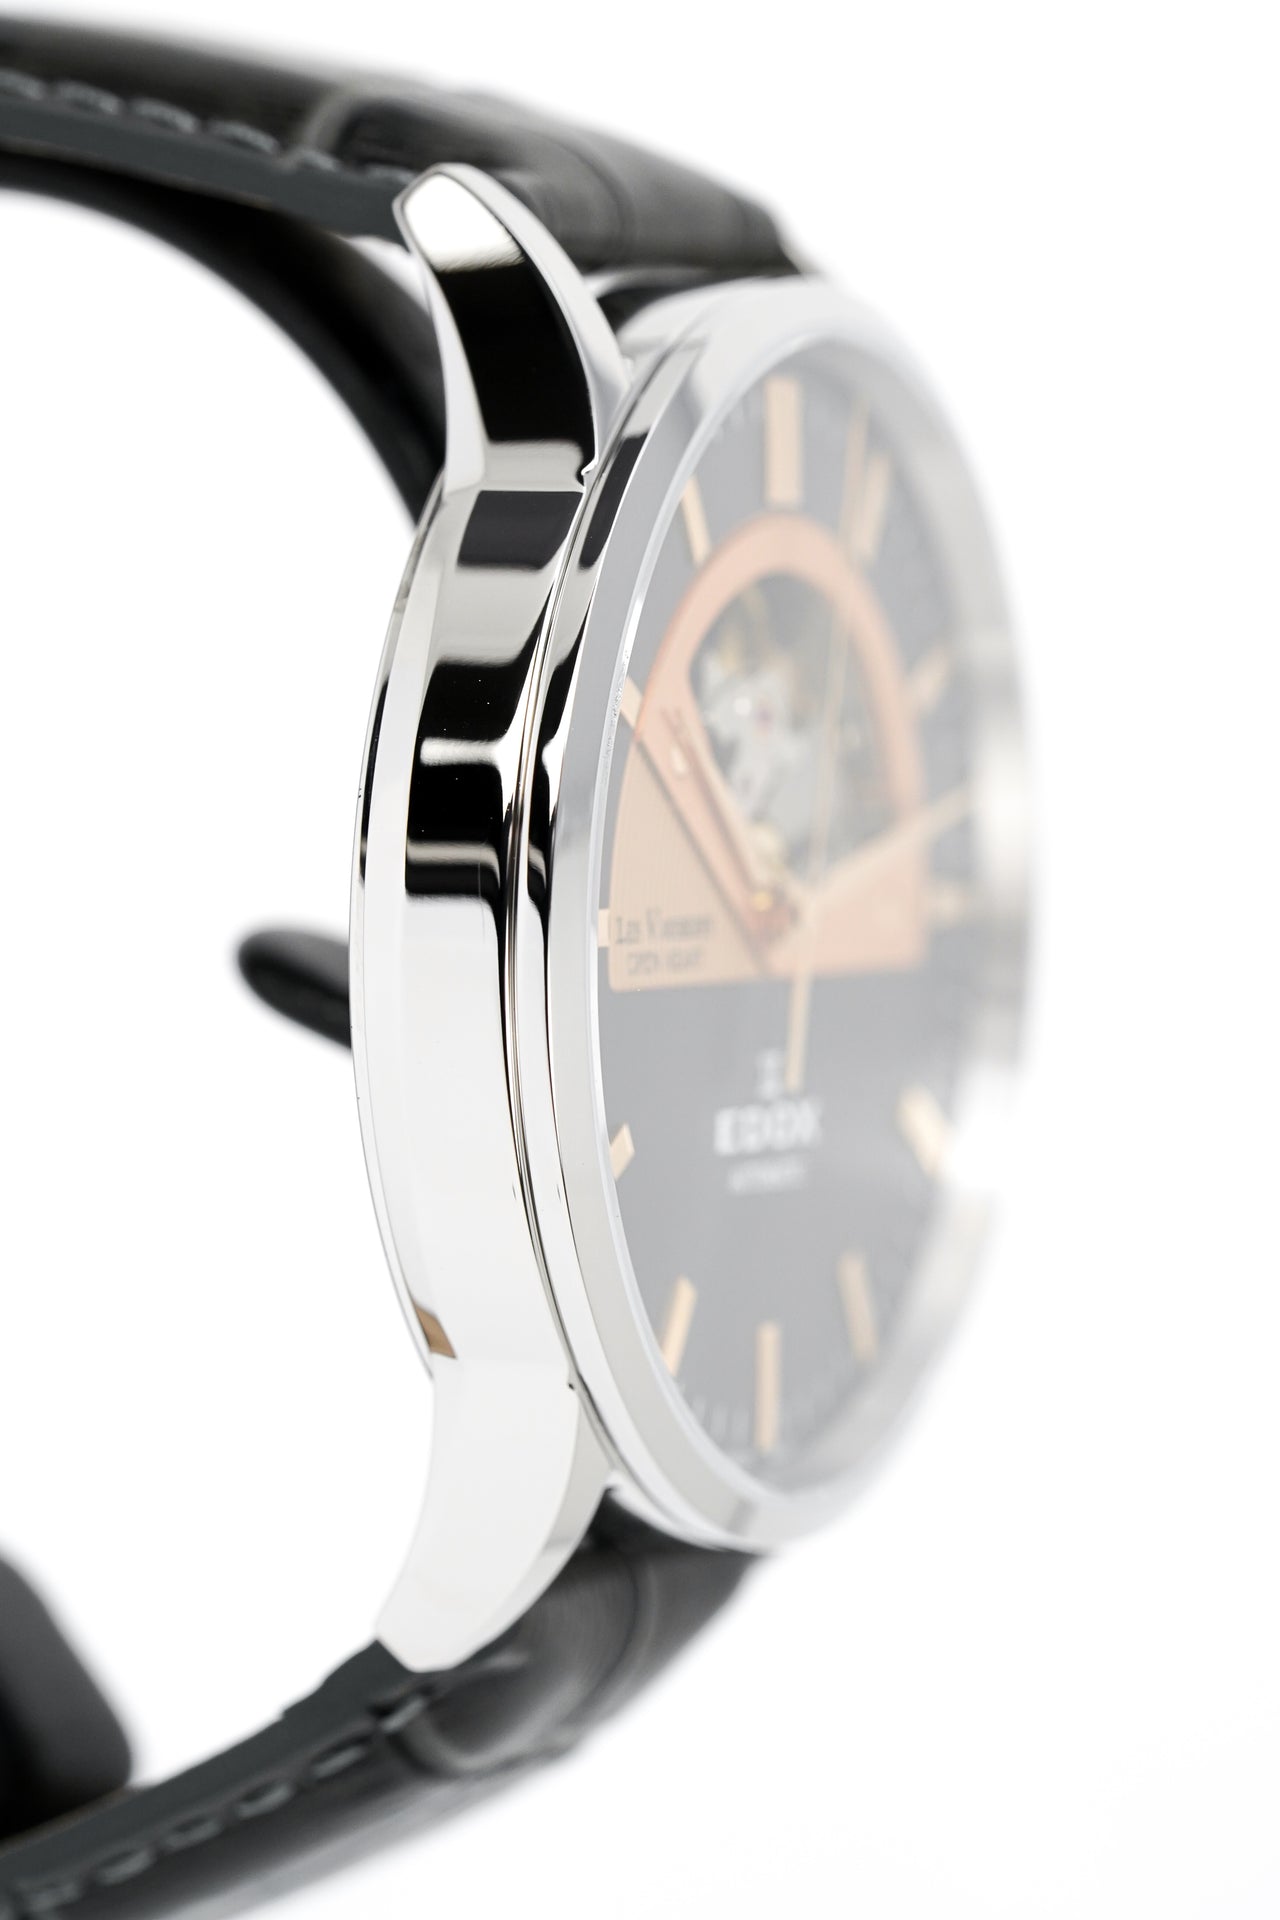 Edox Men's Automatic Watch Les Vauberts Open Heart Rose Gold 43mm 850143GIR